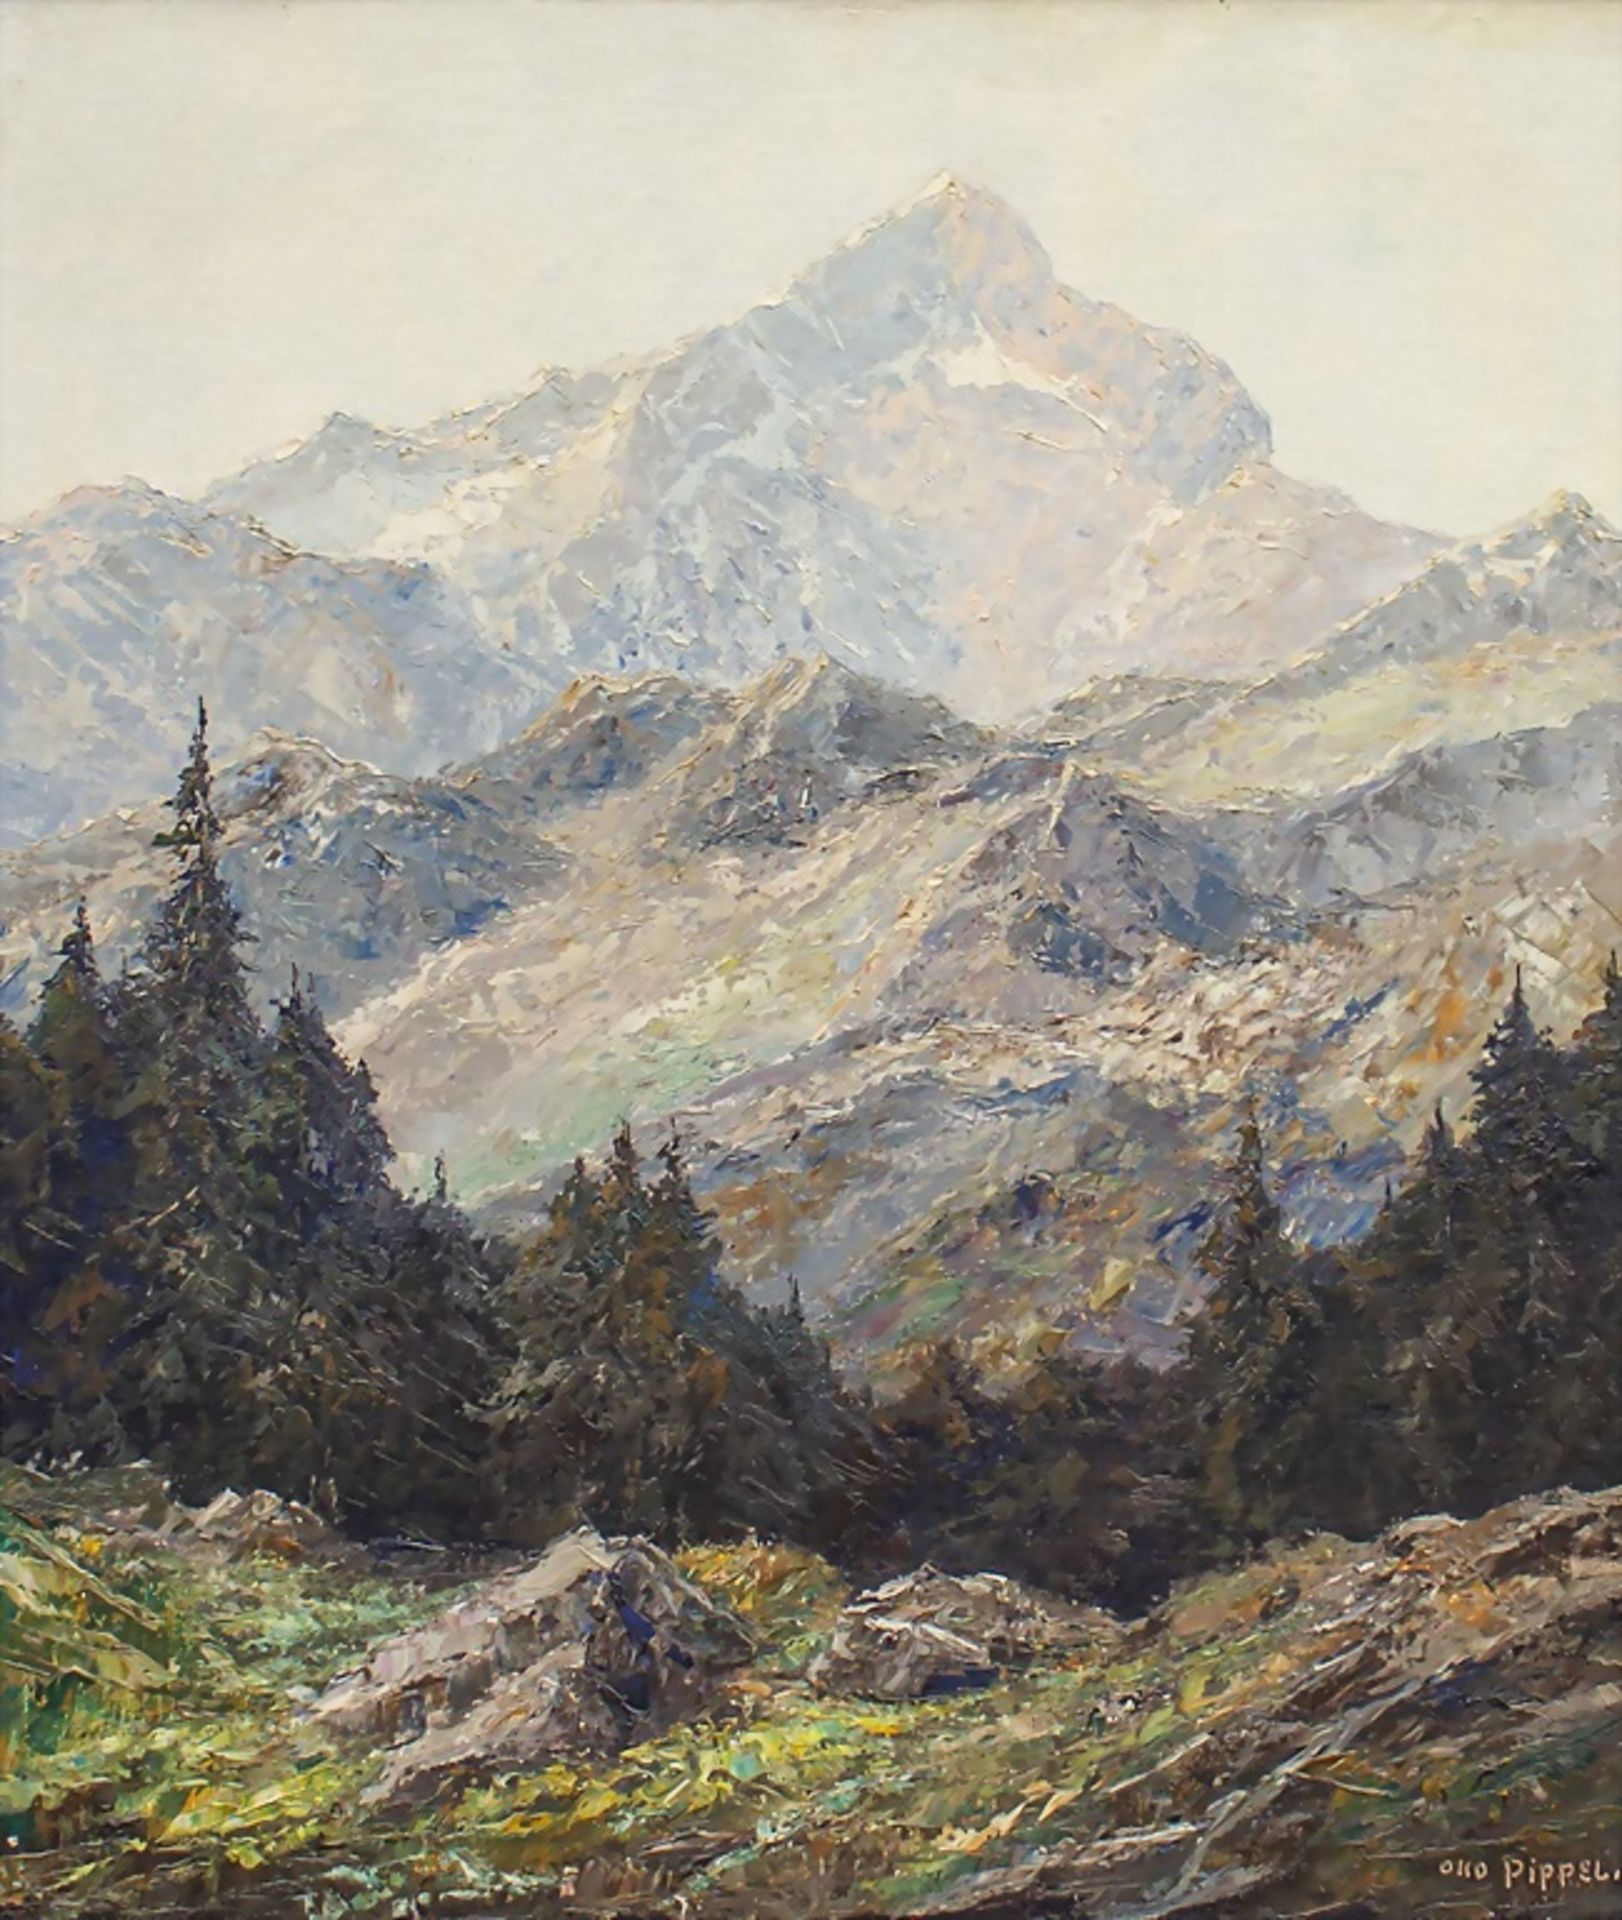 Otto PIPPEL (1878-1960), 'Die Alpspitze bei Garmisch' / 'The Alp top near Garmisch'